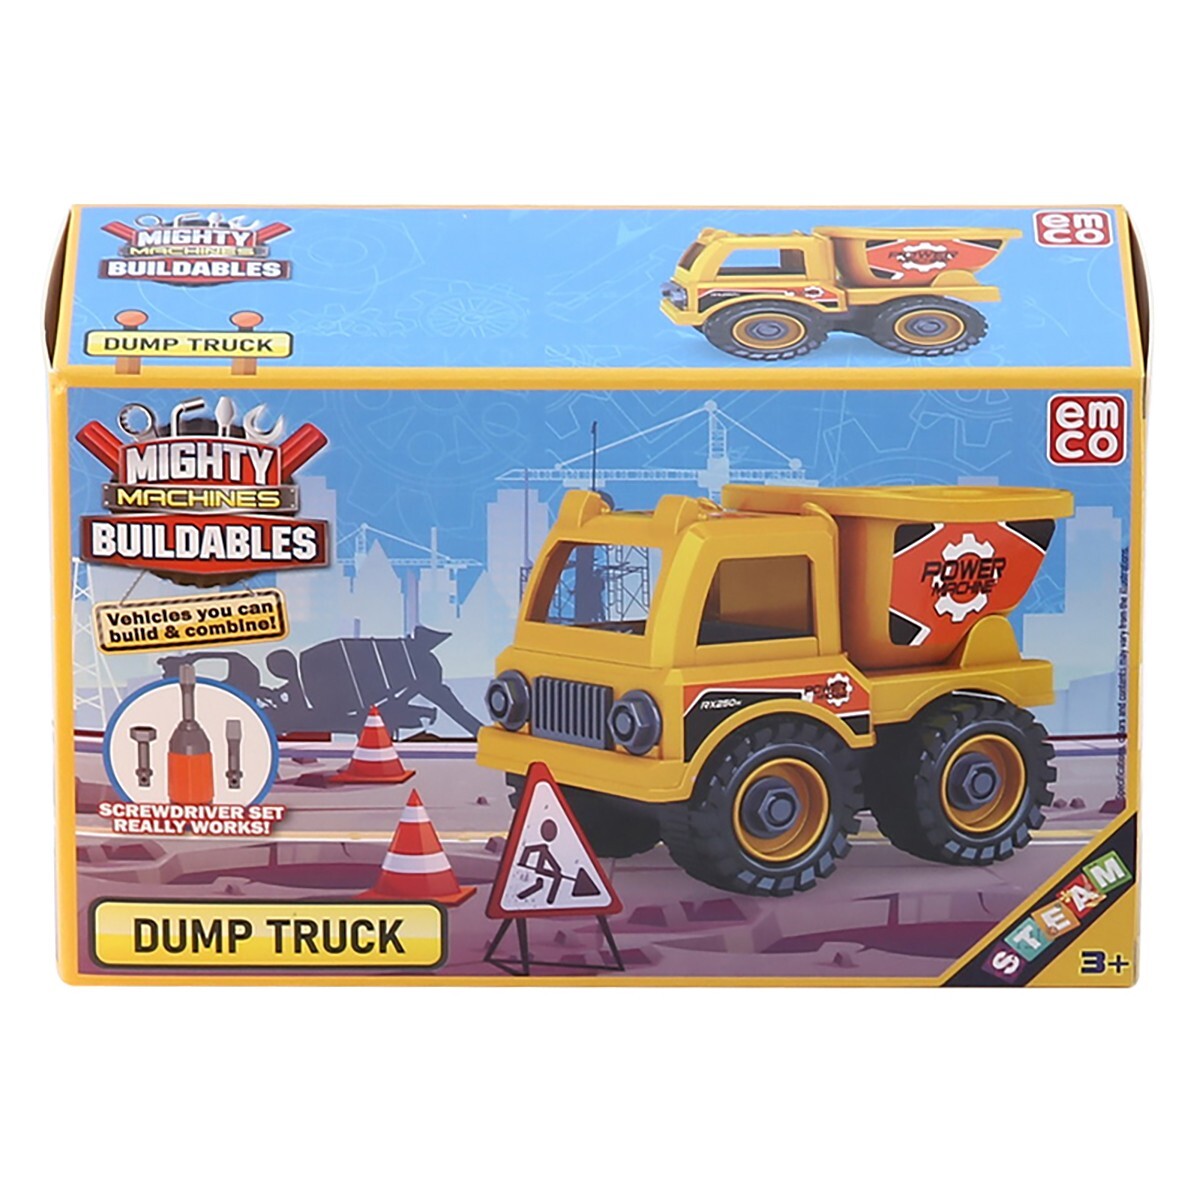 Win Dump Truck Mb70007